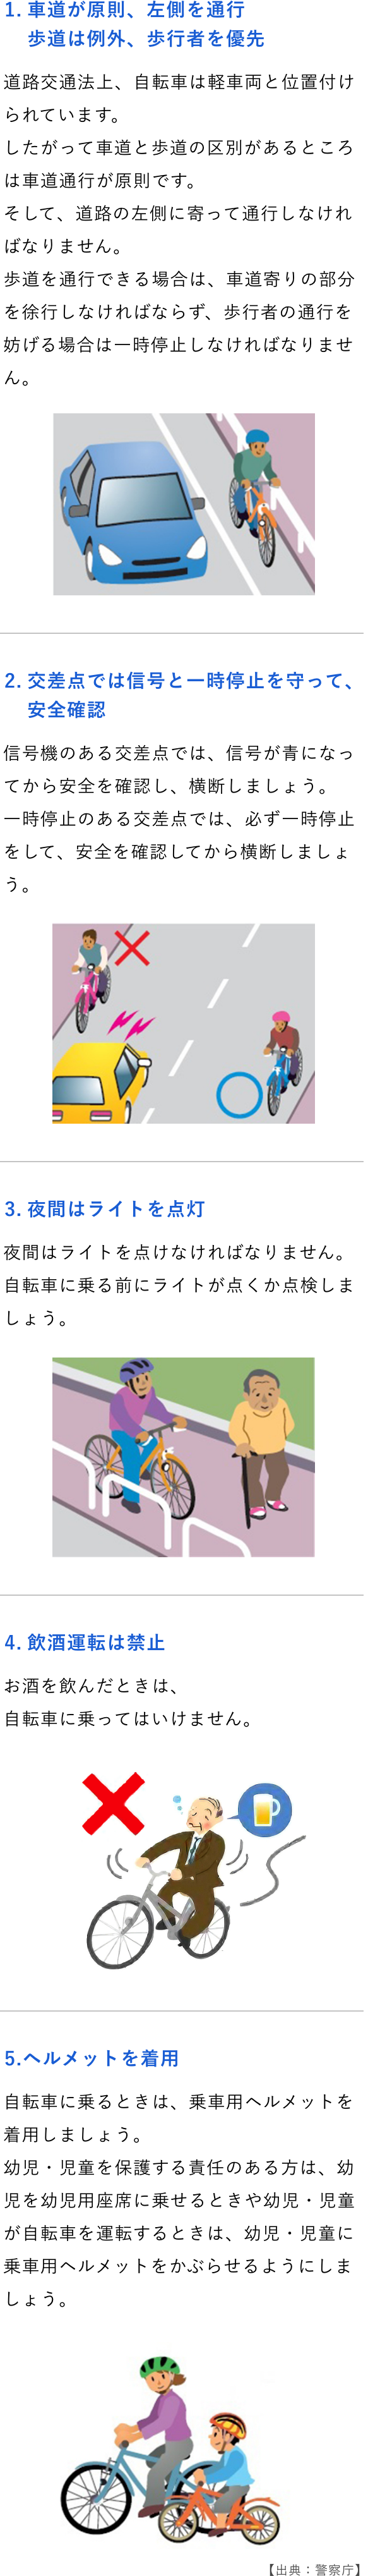 ①自転車は、車道が原則、歩道は例外 ②車道は左側を通行 ③歩道は歩行者優先で、車道寄りを徐行 ④安全ルールを守る ⑤子どもはヘルメットを着用